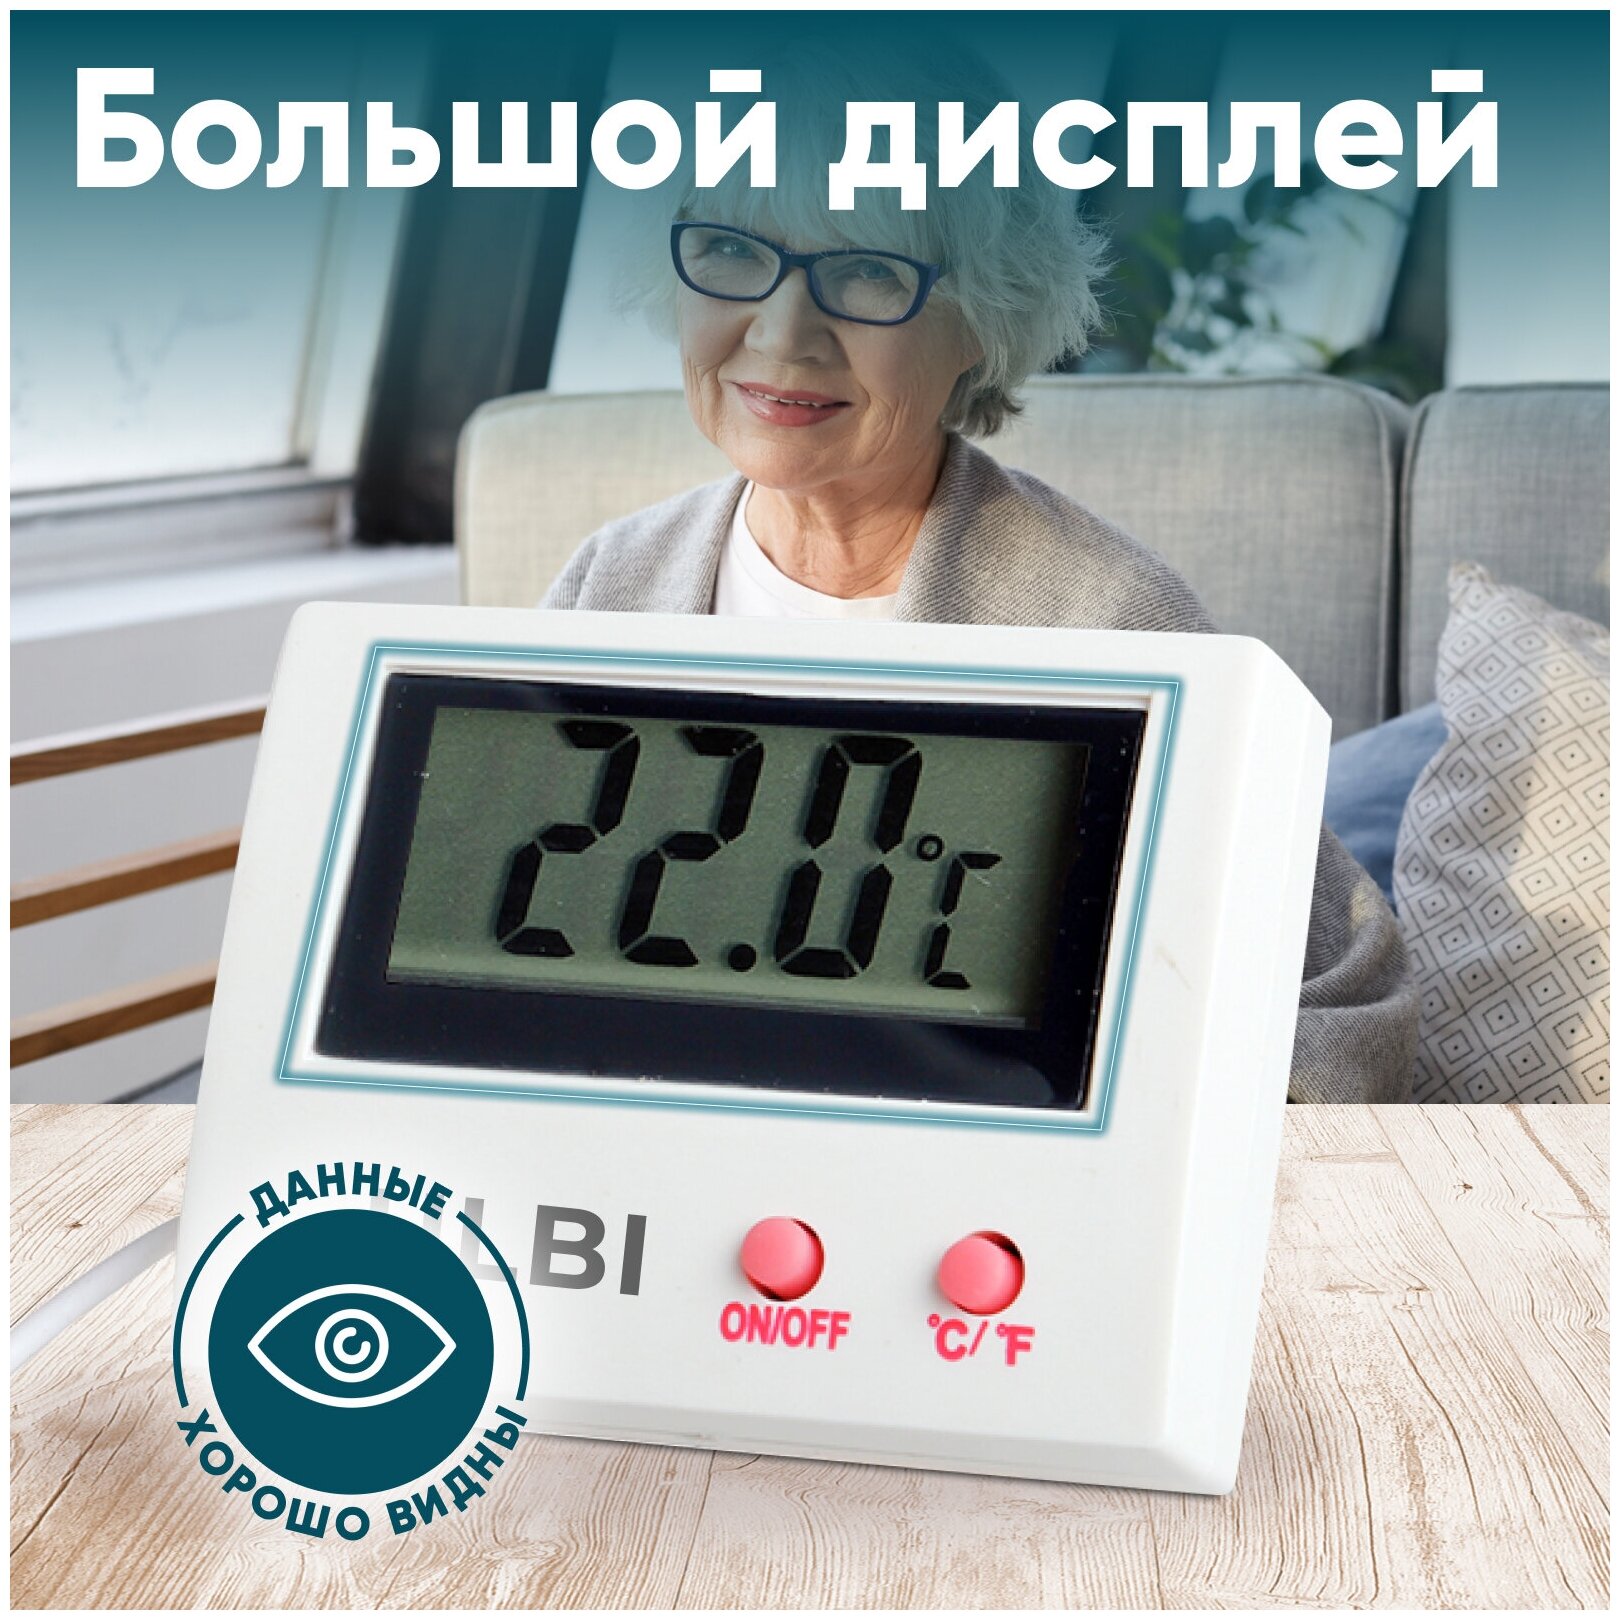 Термометр электронный с выносным датчиком температуры для измерения температуры снаружи и внутри помещения ULBI H4